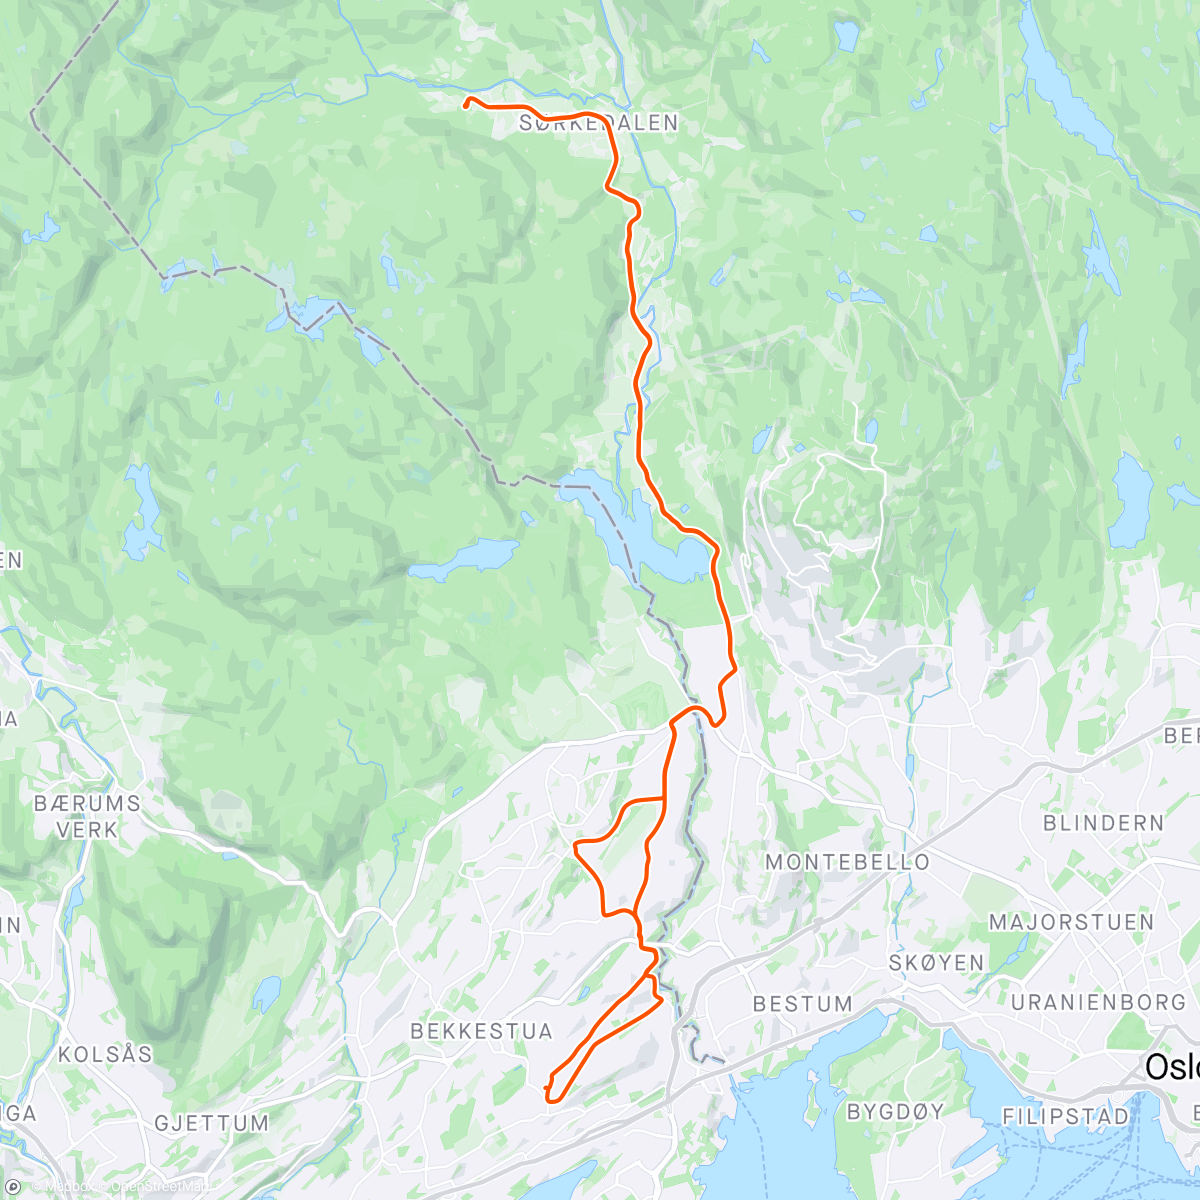 「Sørkedalen」活動的地圖